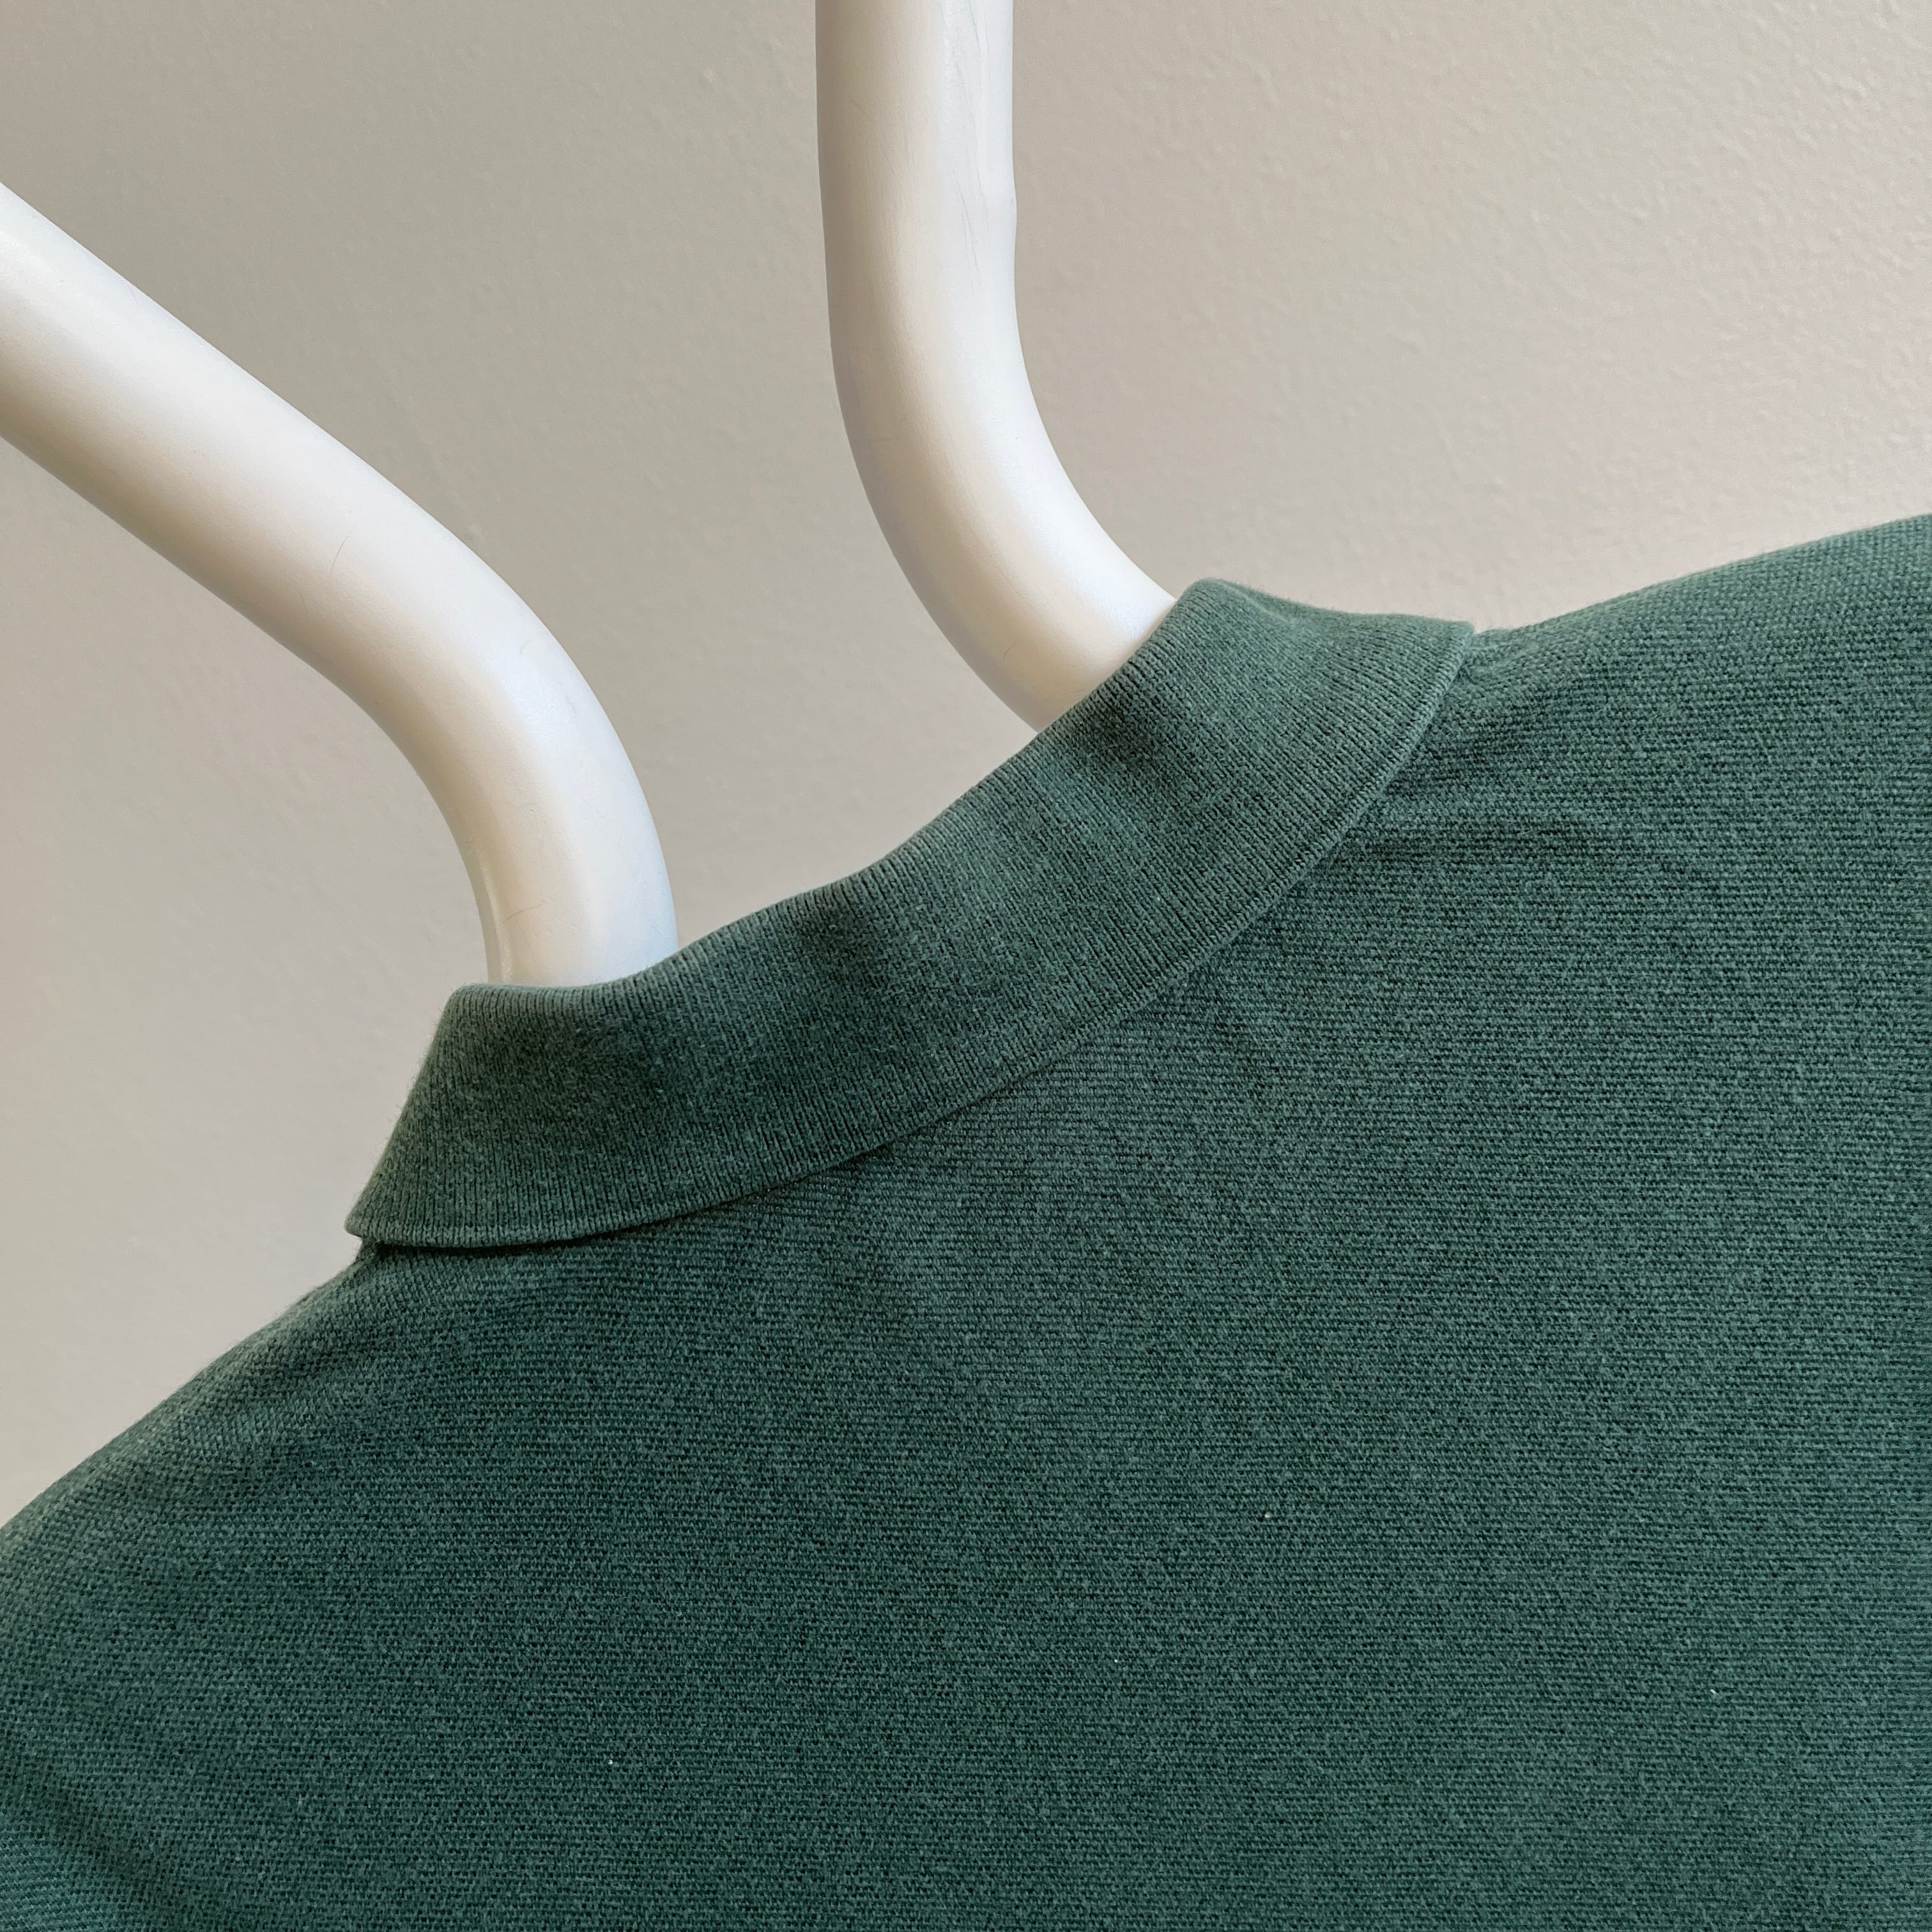 1990/2000s Faded Dark Green Ralph Lauren Polo Shirt